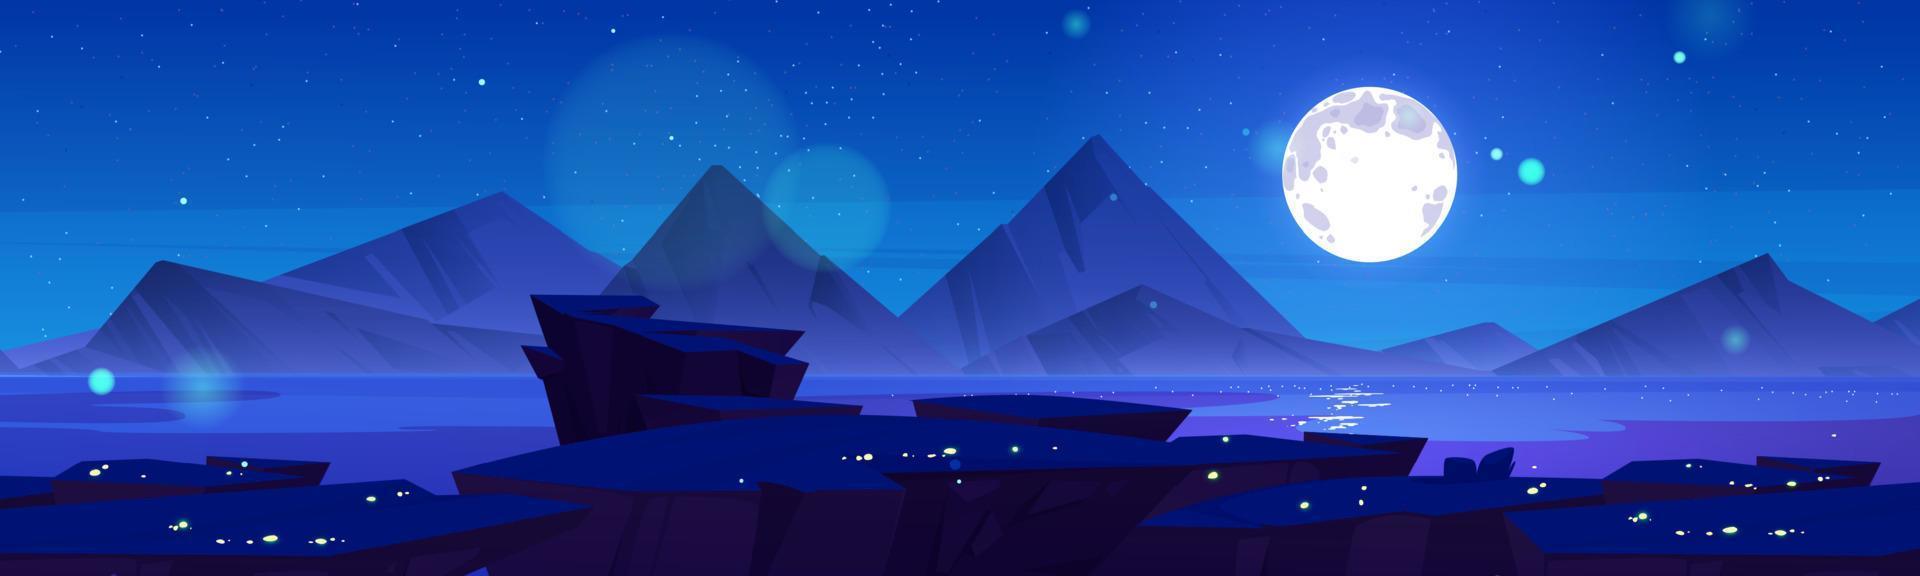 ciel nocturne, illustration de dessin animé de paysage de montagne vecteur